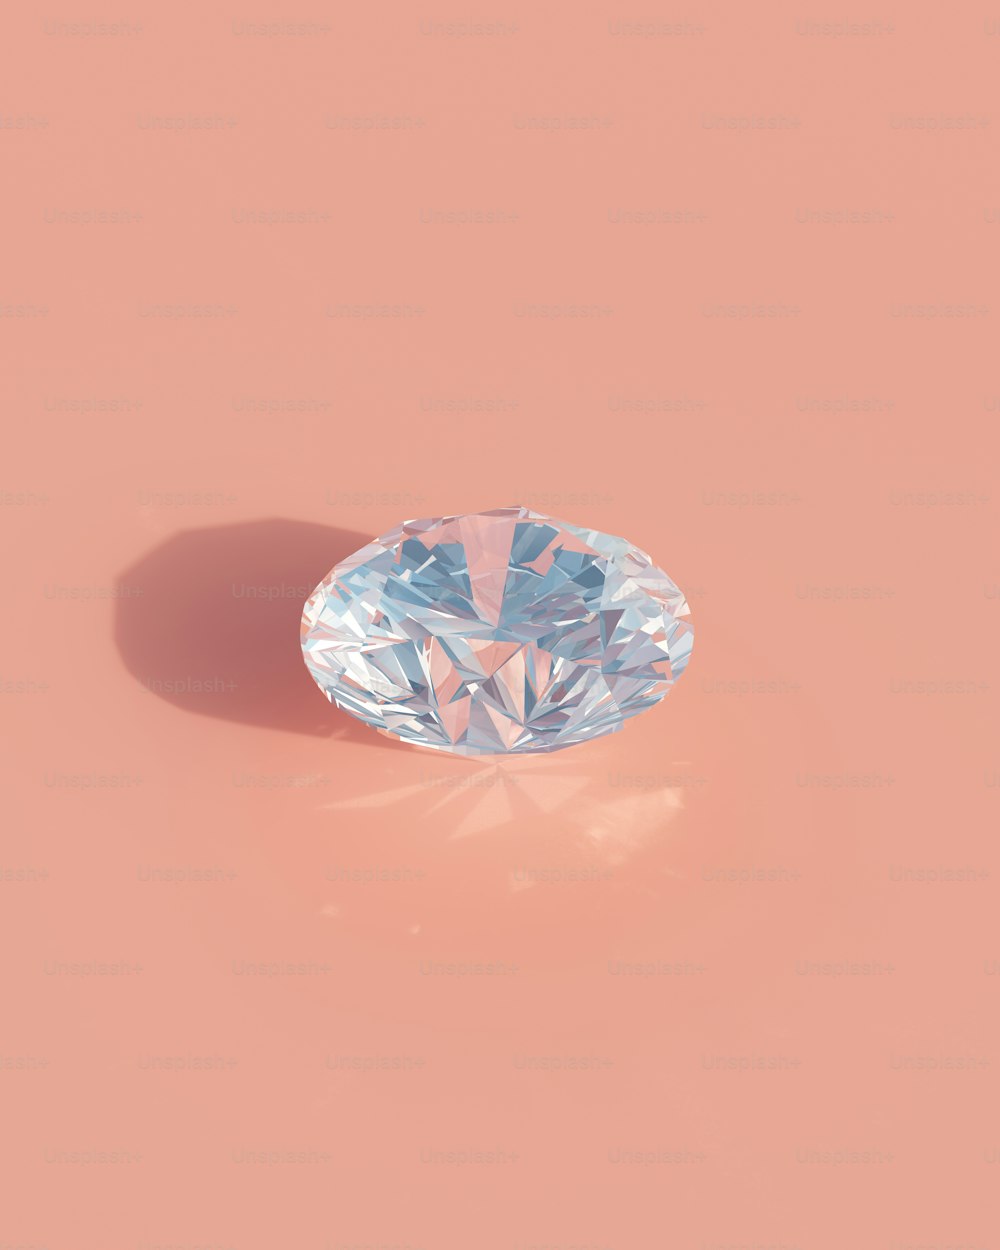 a light blue diamond on a pink background